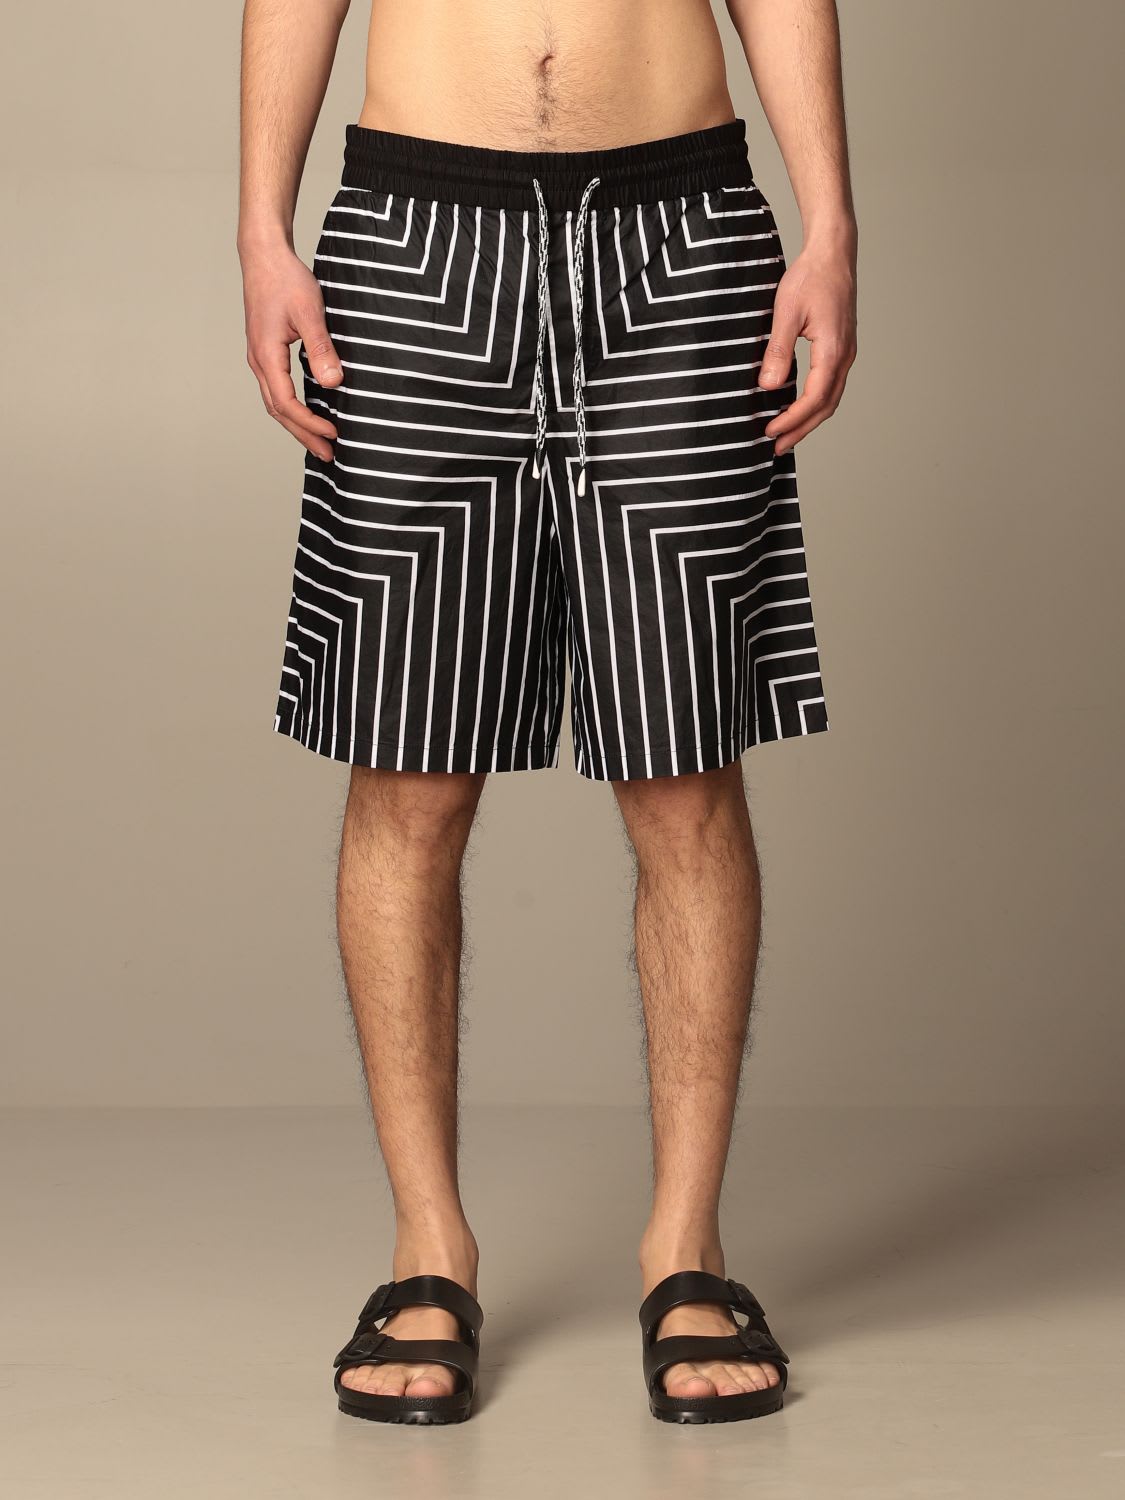 Emporio Armani Short Emporio Armani Bermuda Shorts In Striped Cotton